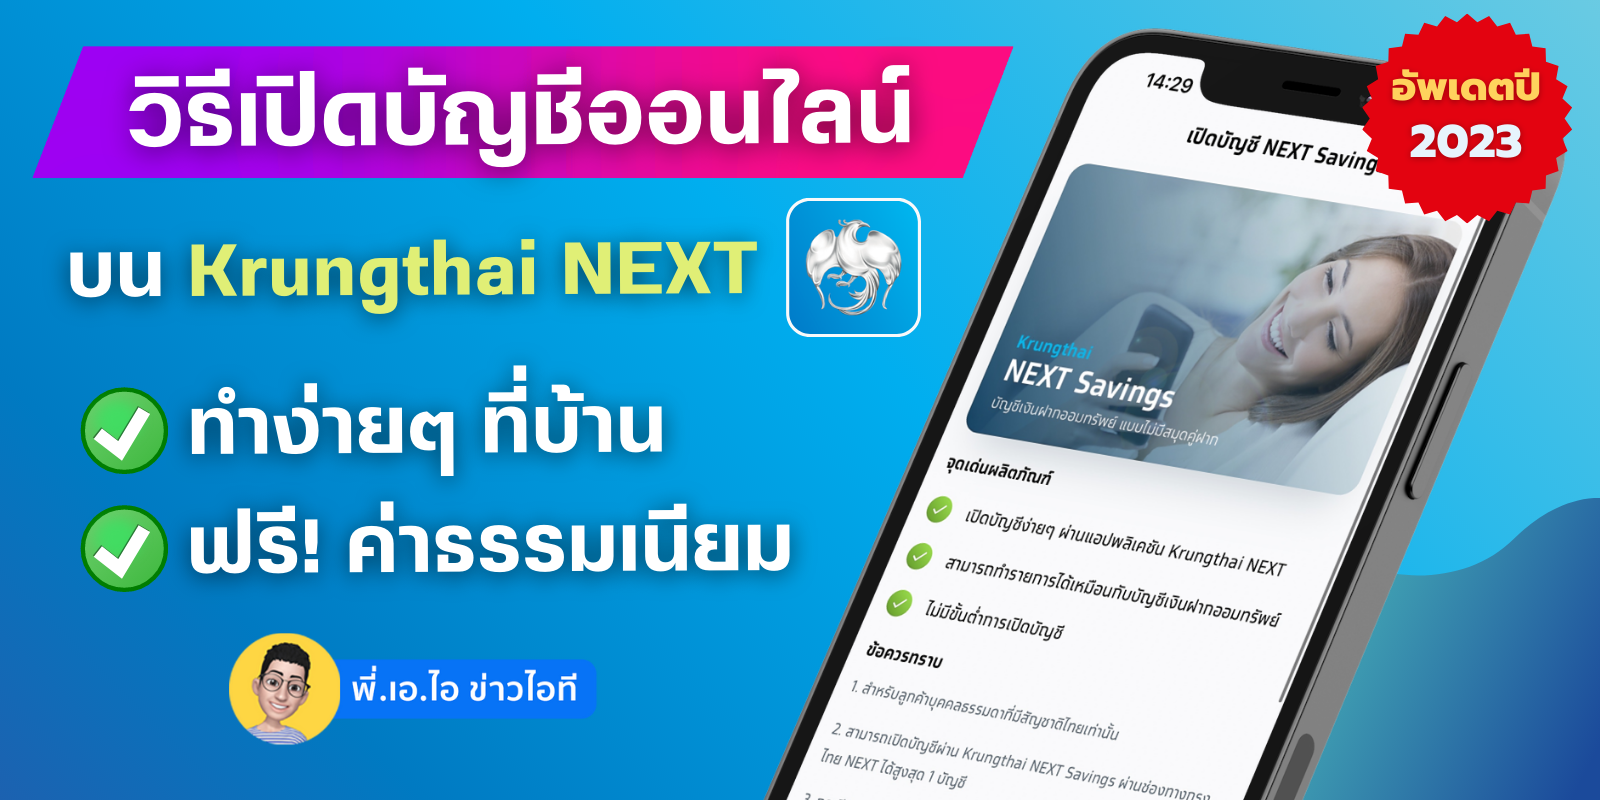 รีวิววิธีเปิดบัญชีธนาคารออนไลน์ฟรี ผ่านแอป Krungthai Next ธนาคารกรุงไทย  ไม่เสีย